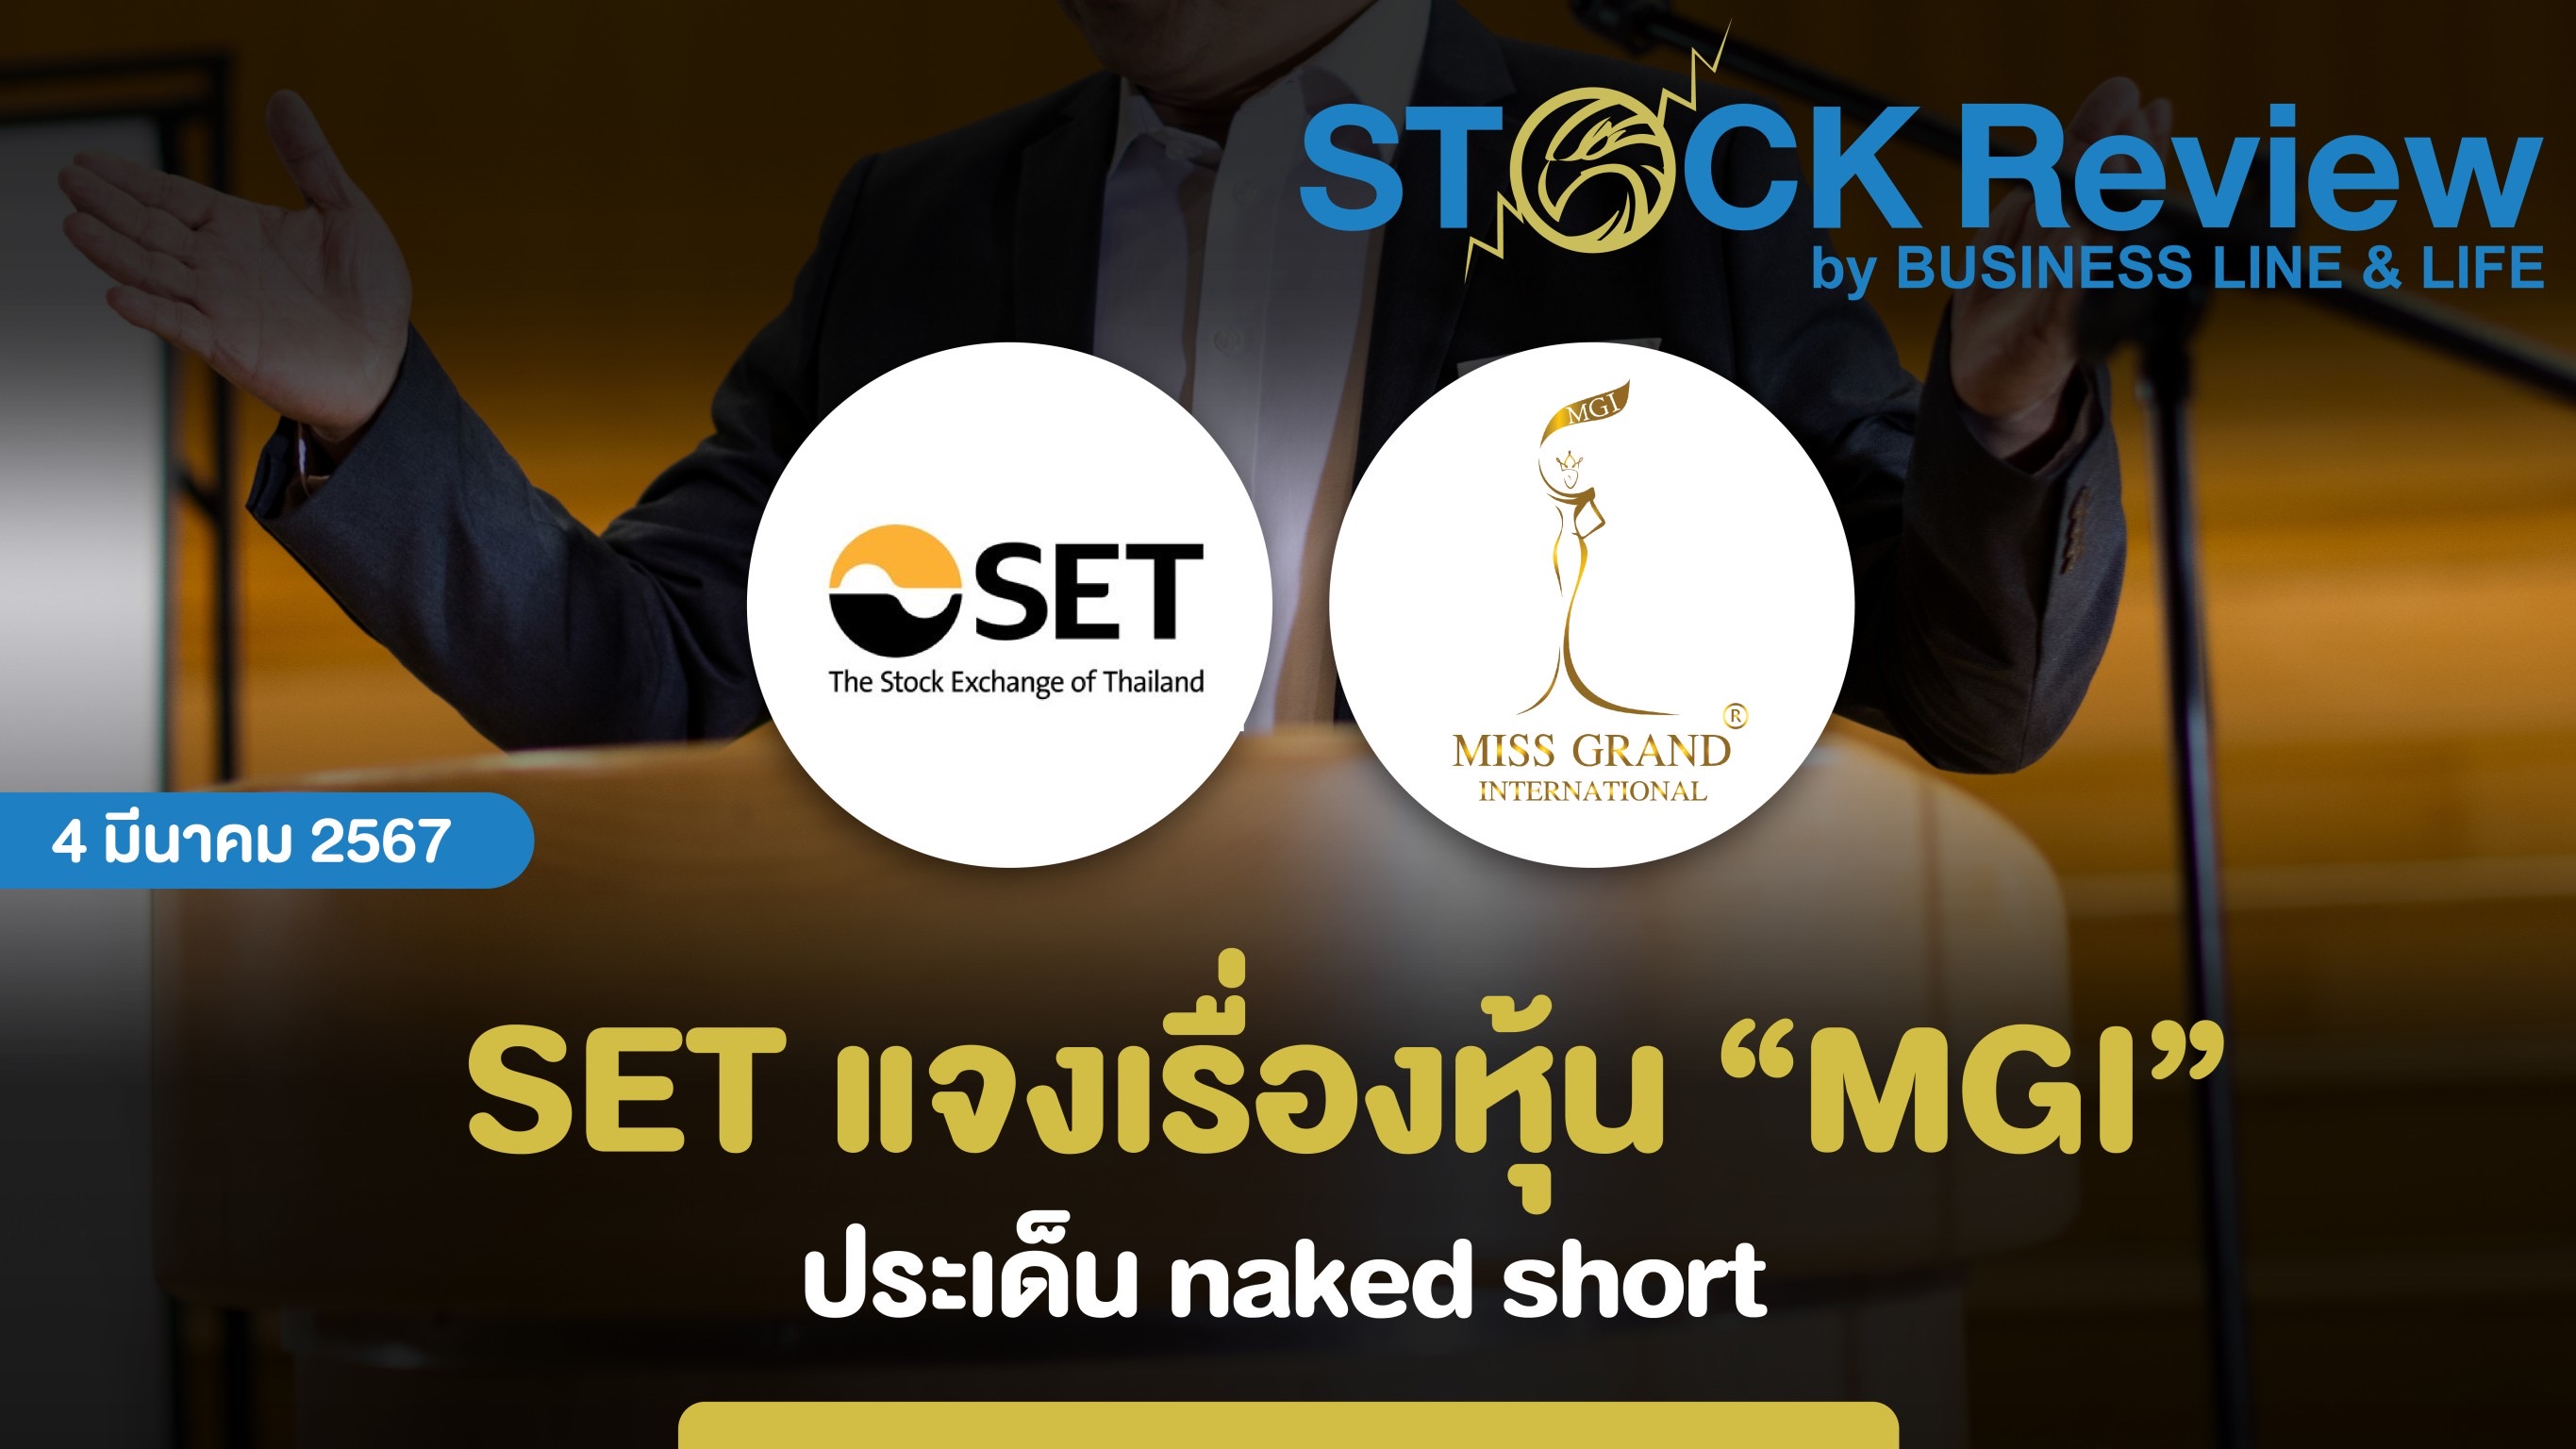 ตลาดหลักทรัพย์ฯ แจ้งข้อเท็จจริงหุ้น MGI เรื่อง Naked Short Selling